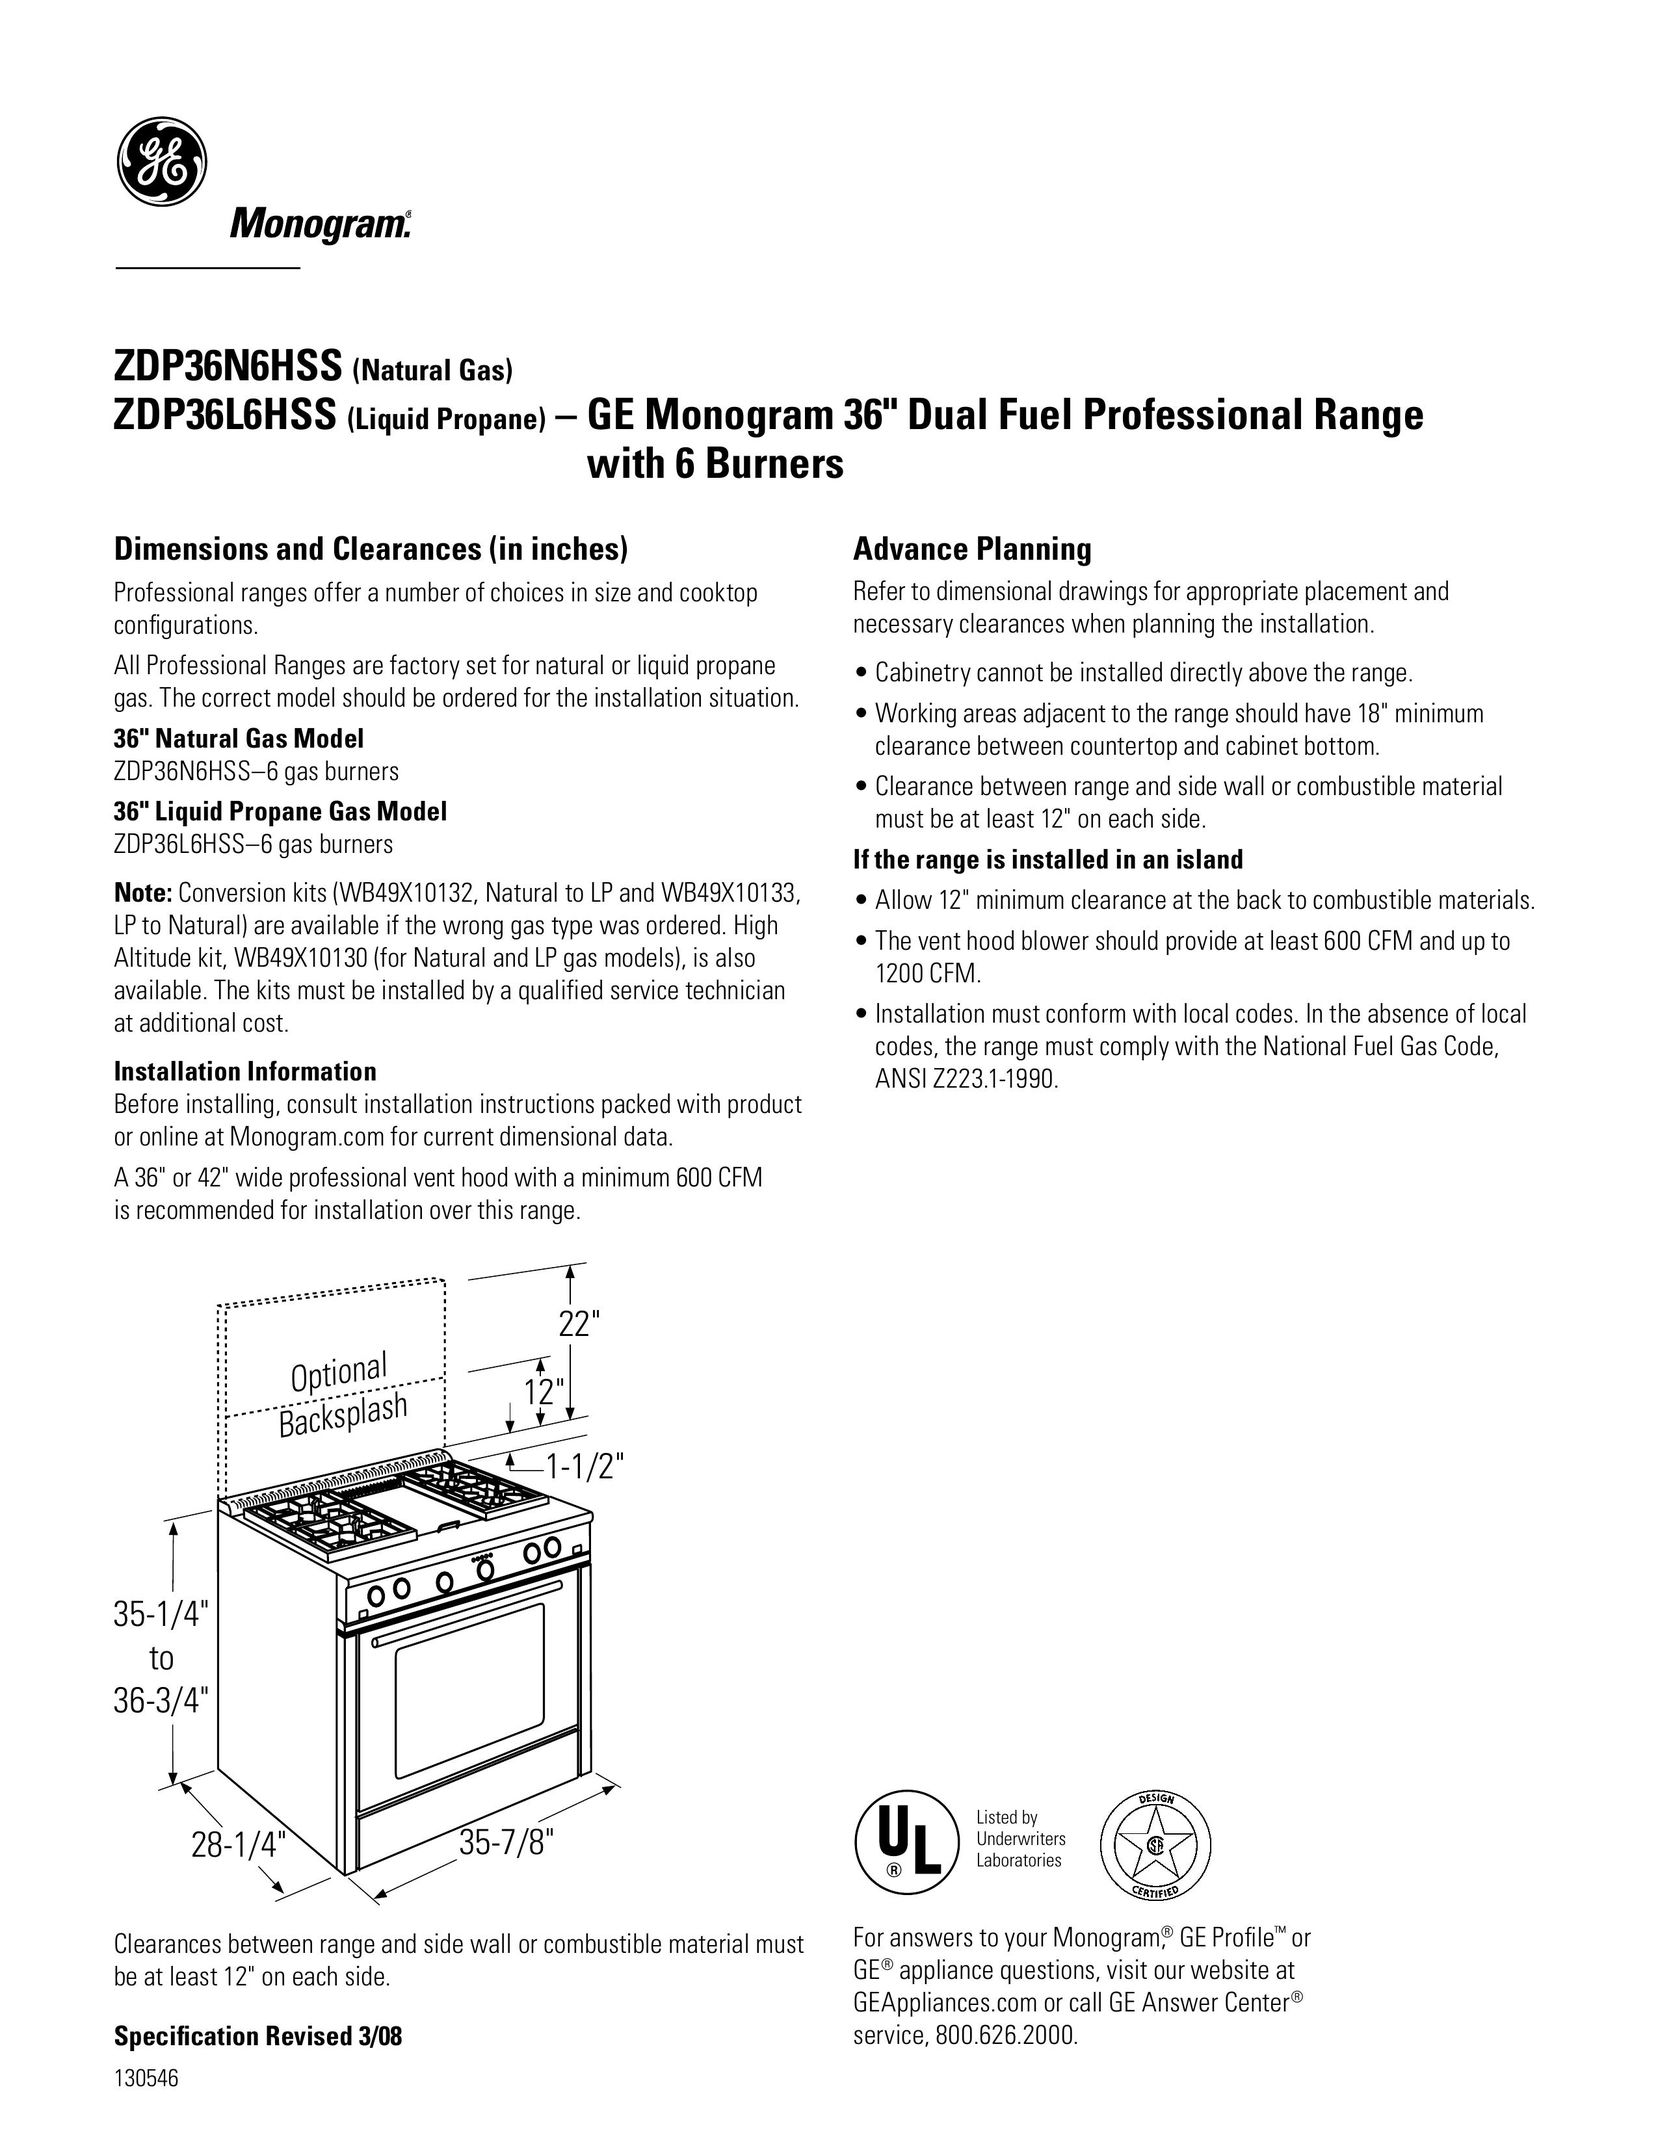 GE Monogram zDP36N6hSS Range User Manual